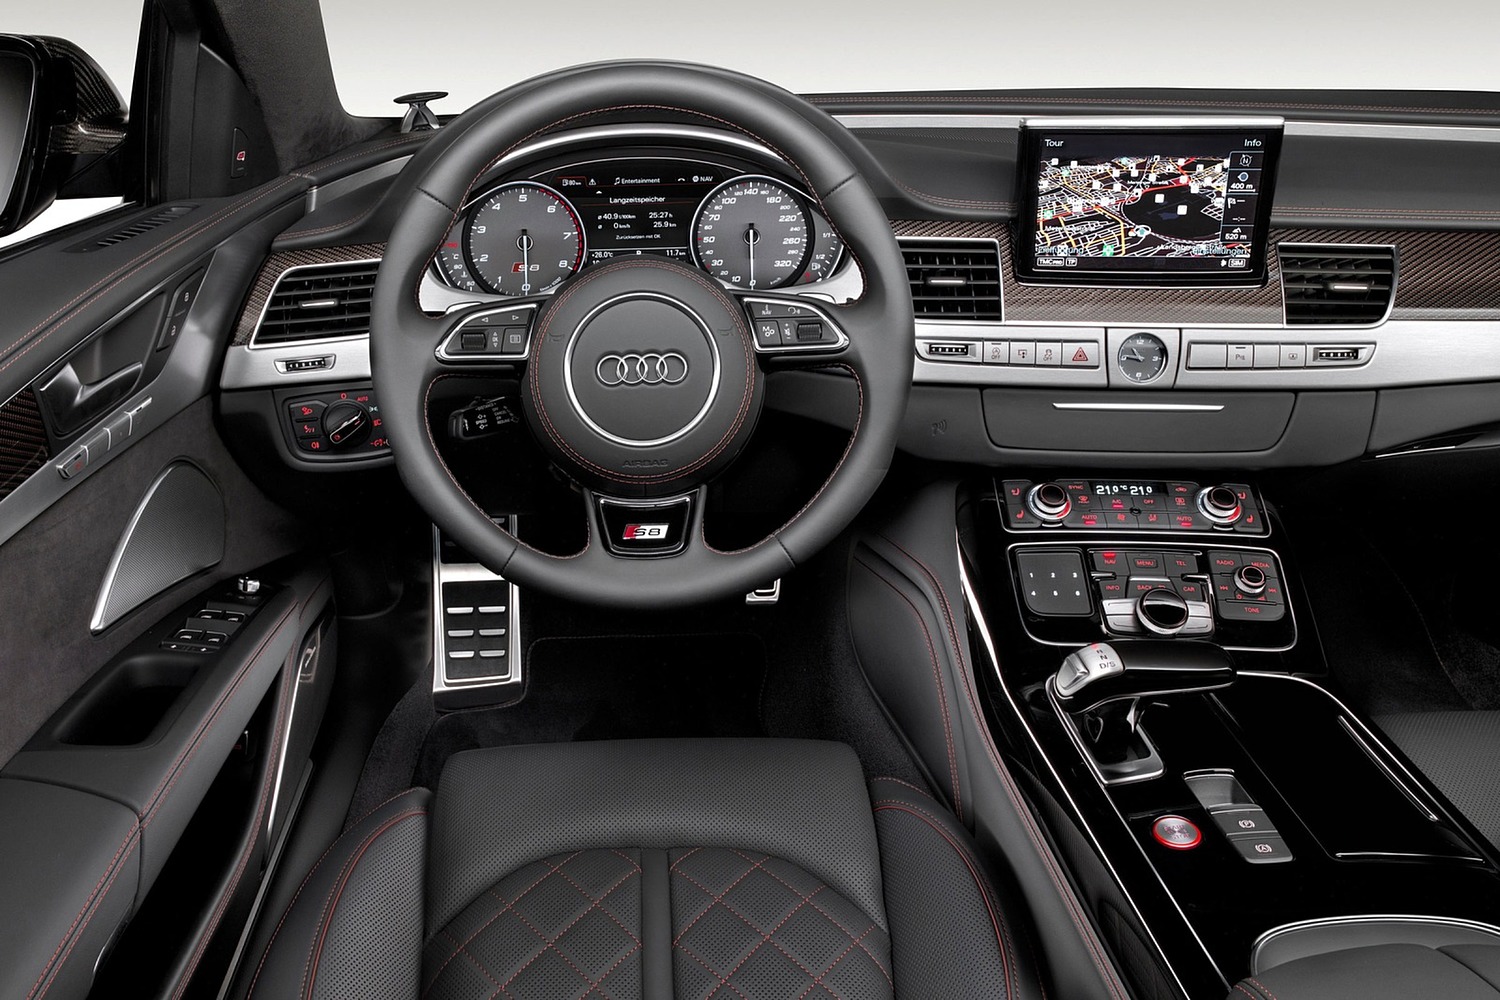 Audi S8 plus quattro Sedan Interior (2017 model year shown)